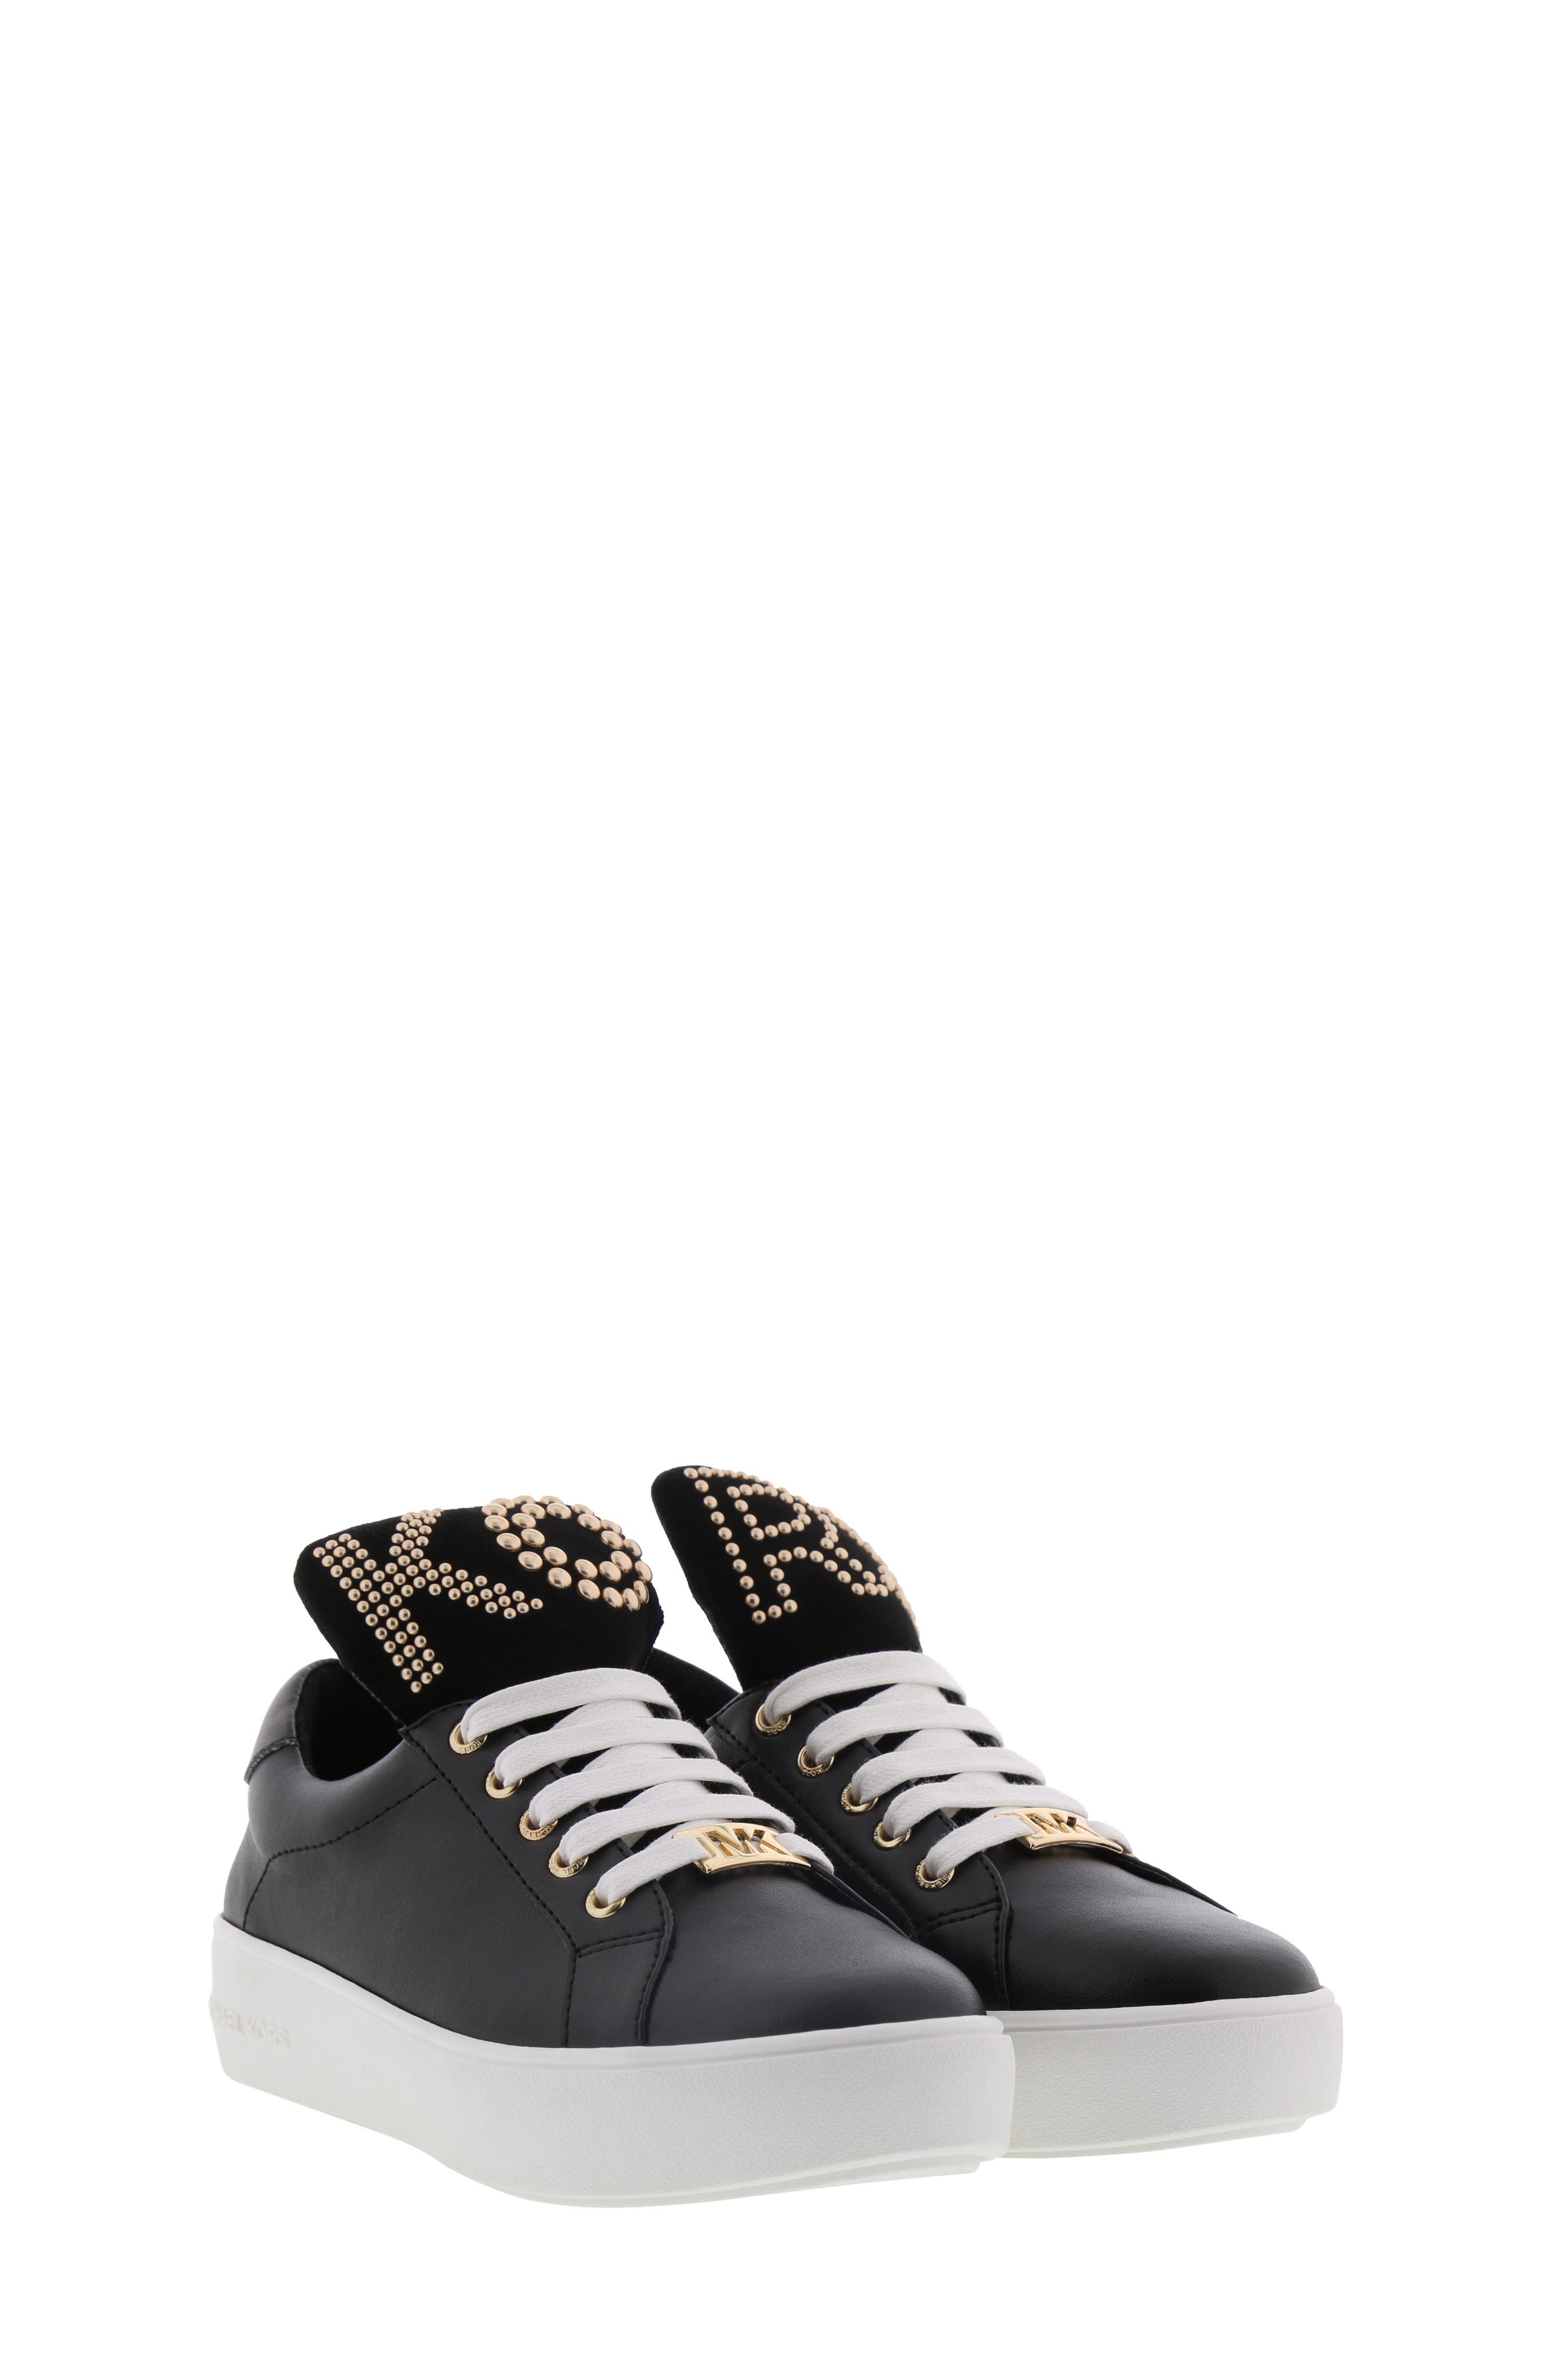 UPC 036000000054 product image for Girl's Michael Michael Kors Maven Dottie Studded Logo Sneaker | upcitemdb.com